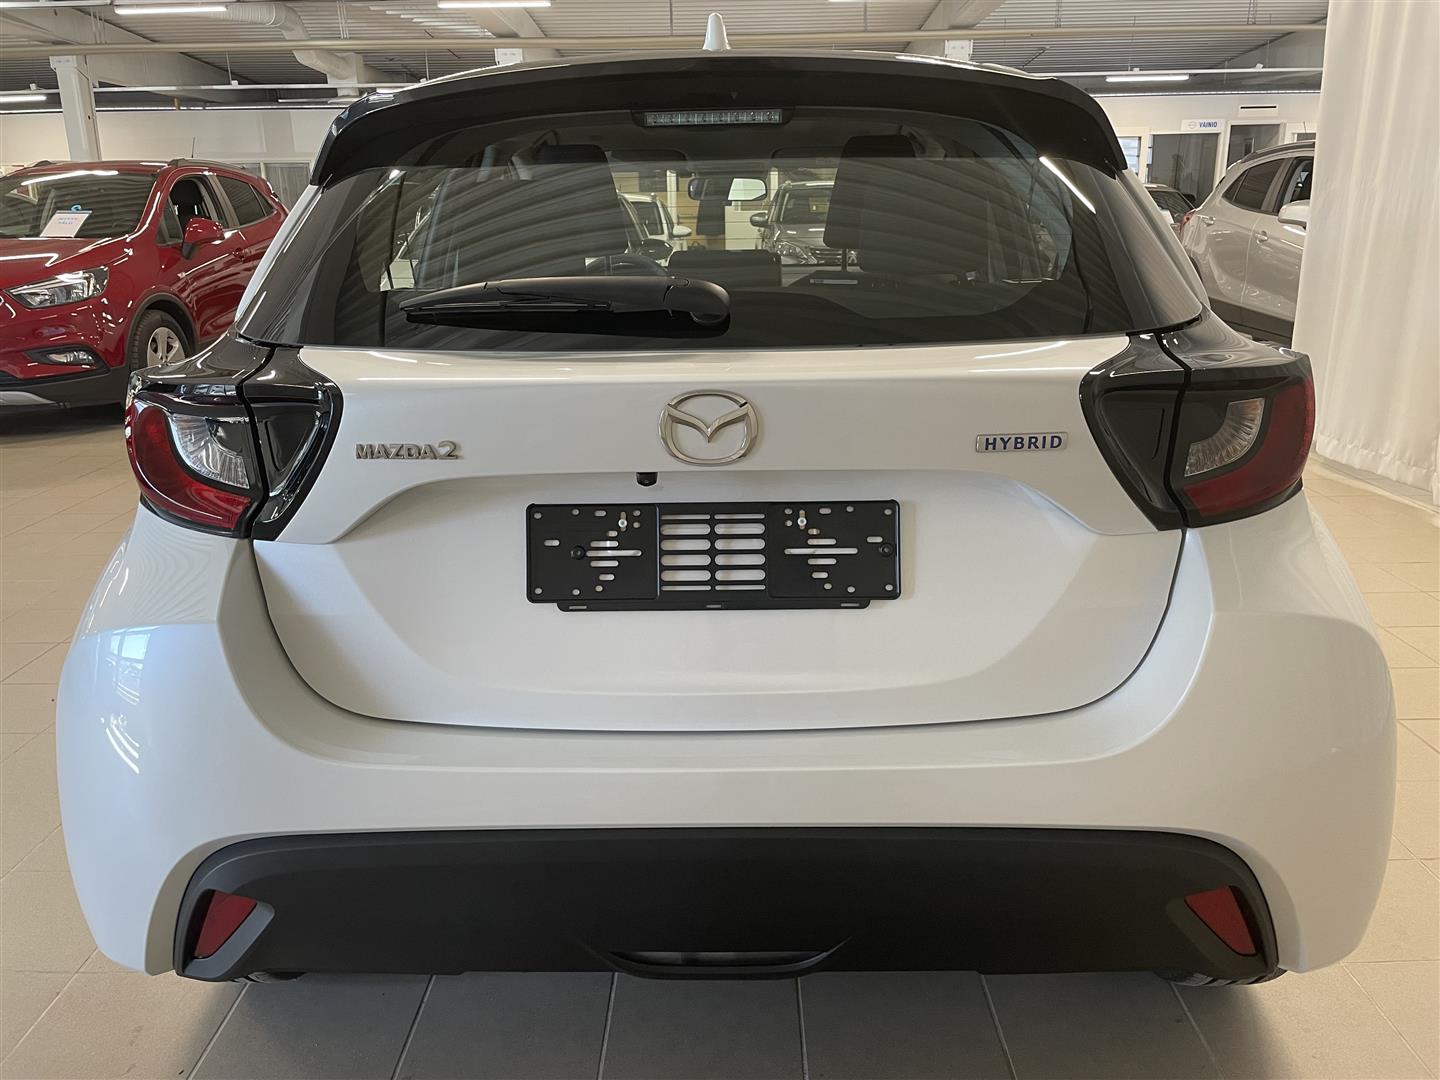 Mazda Mazda2 Hybrid 1.5 (116) Centre-line